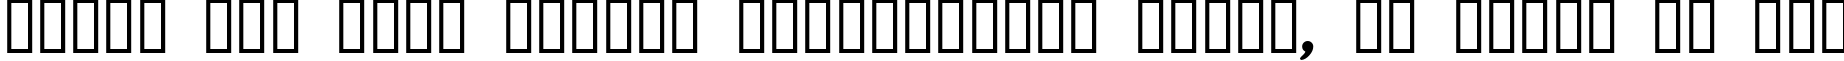 Пример написания шрифтом Euskal Font Normal текста на русском